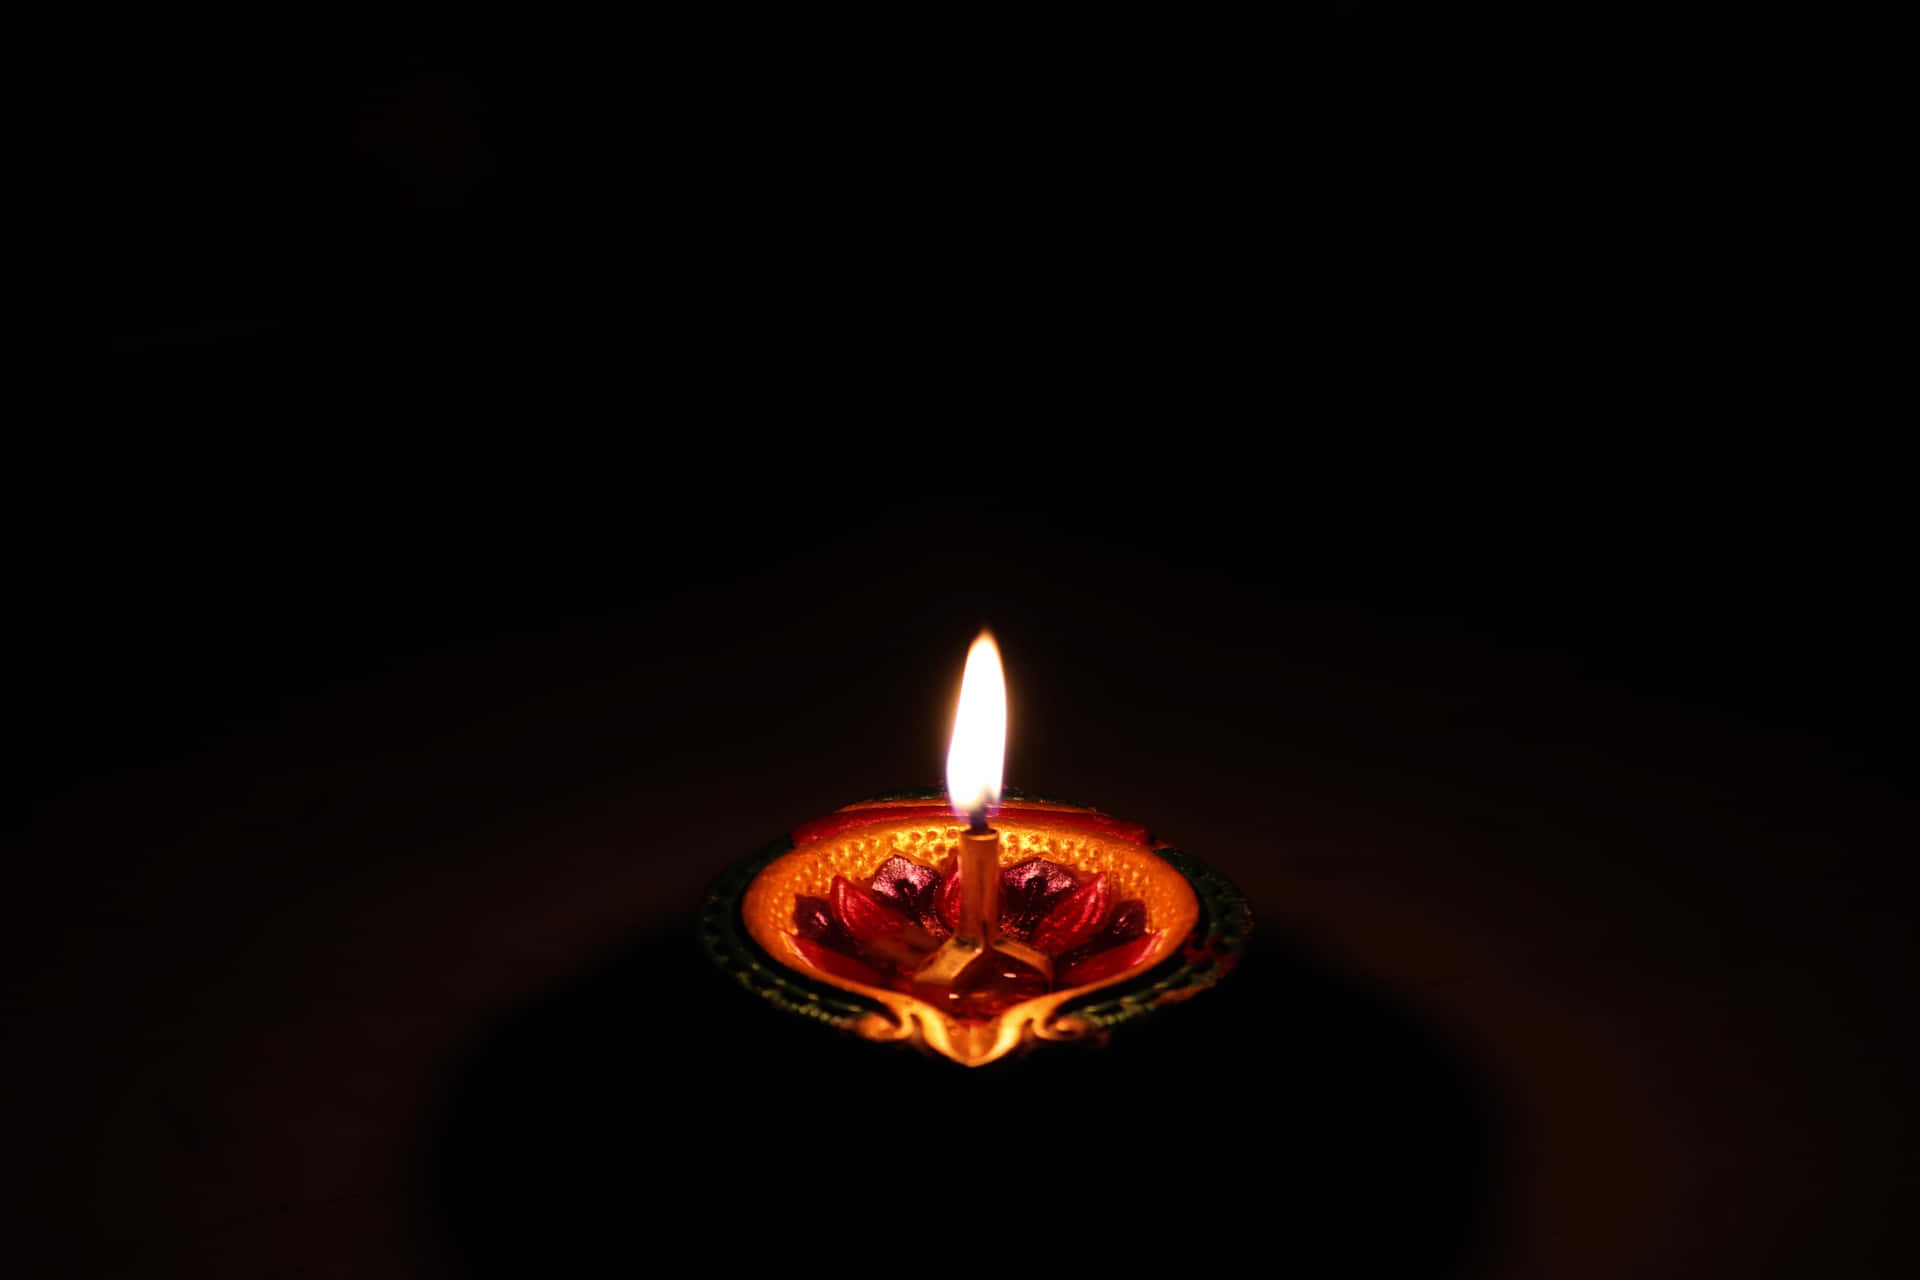 Caption: Celebrating Light and Prosperity - Diwali Background